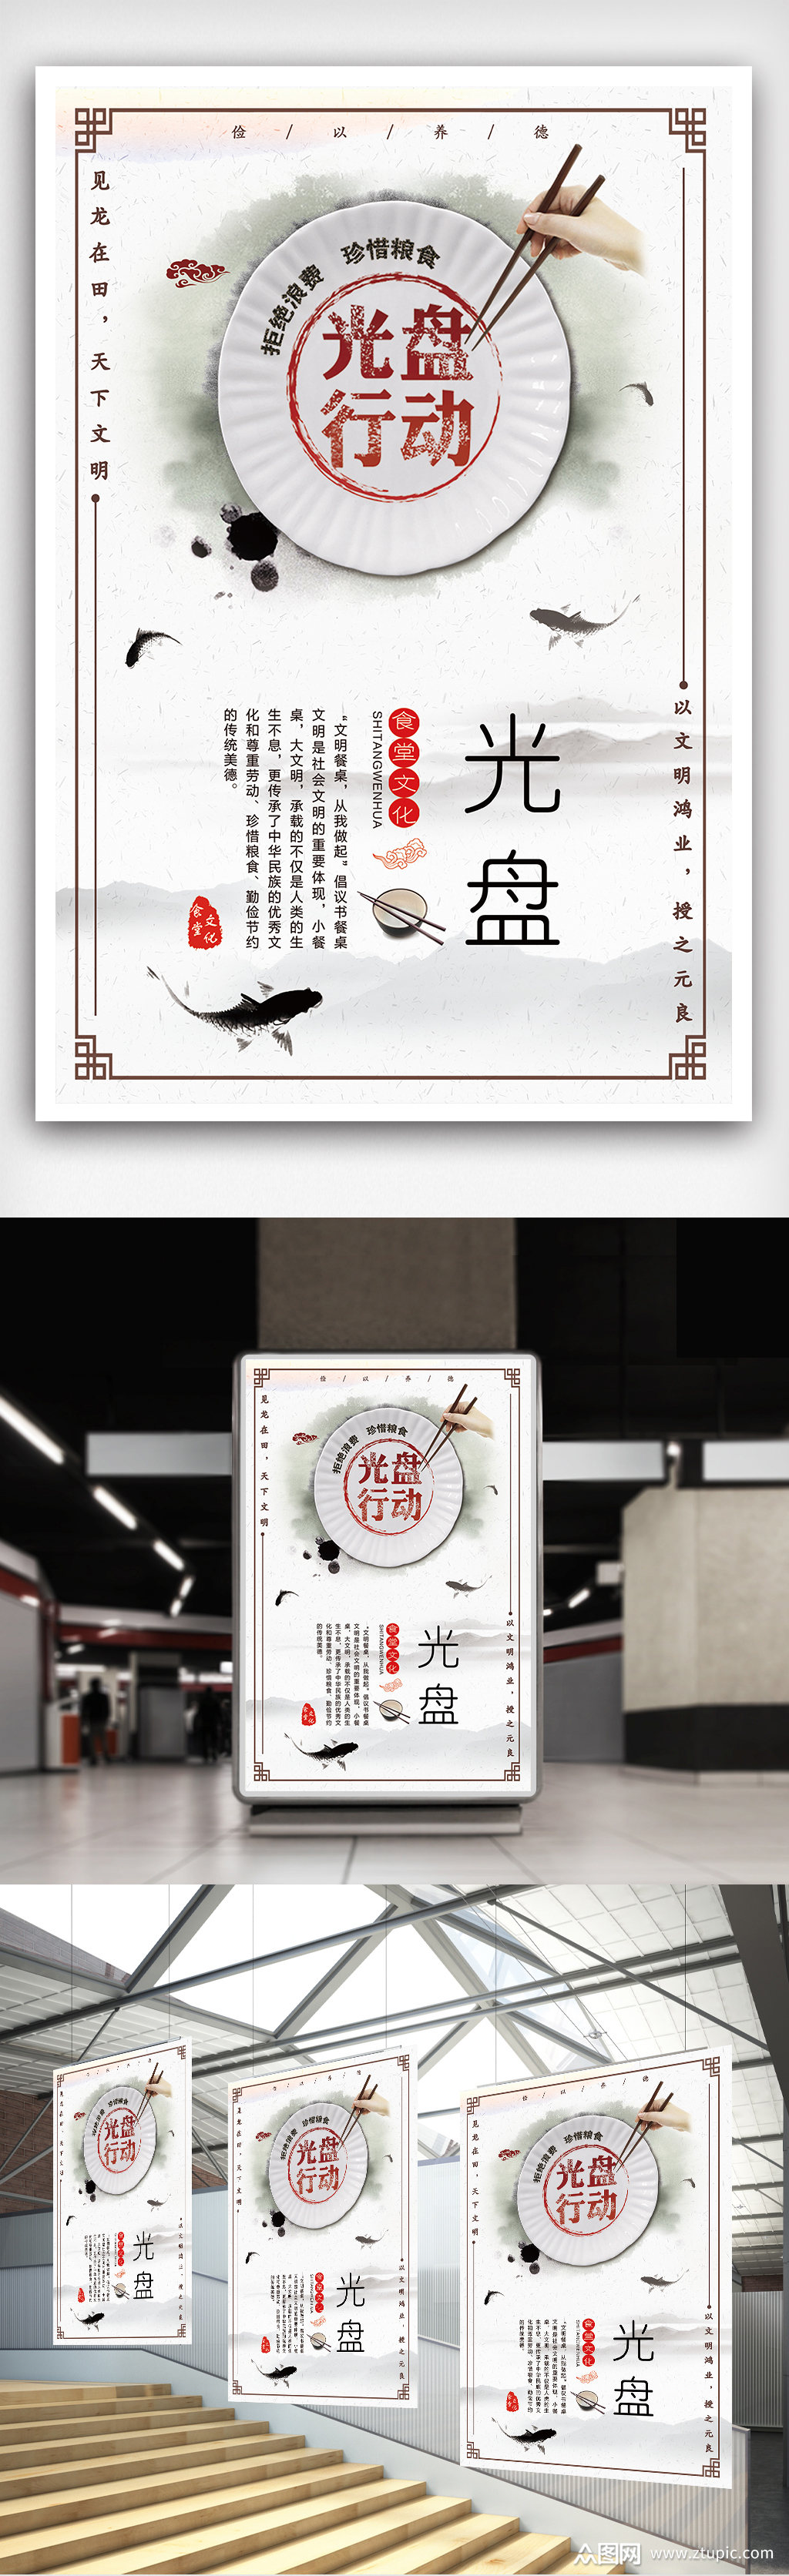 众图网独家提供大气简约中国风光盘行动海报模板素材免费下载,本作品